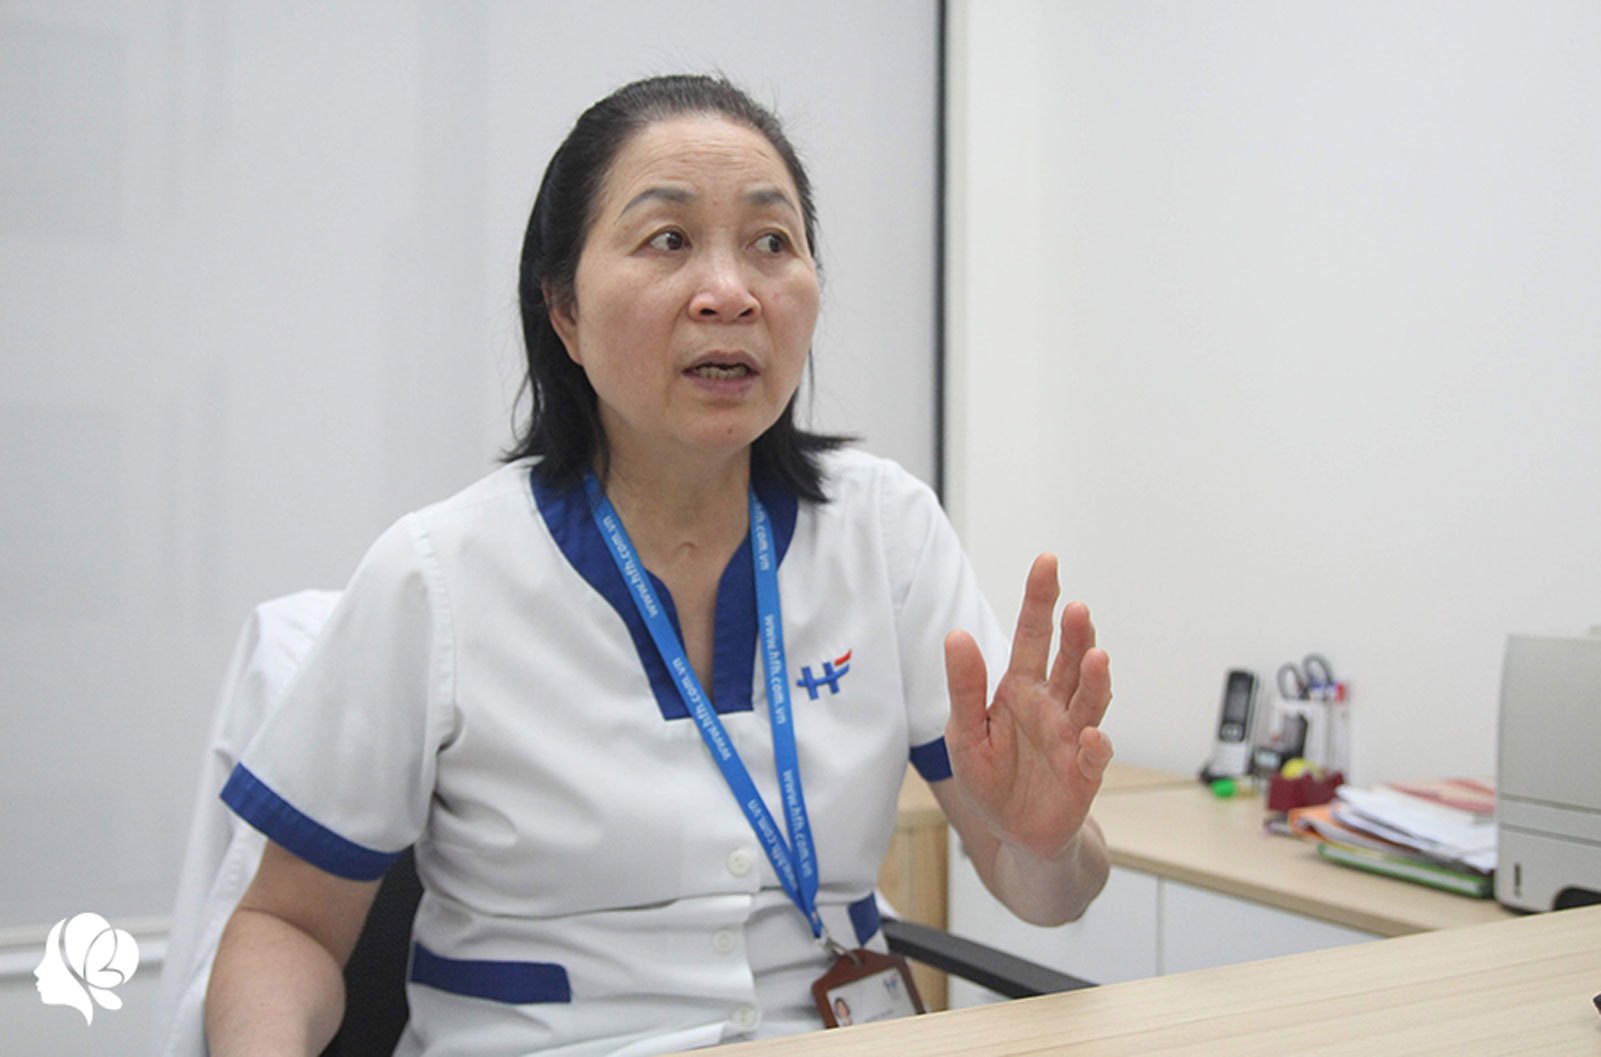 Nữ y tá thoát chết trong dịch SARS: “Tôi bị liệt, nhưng không đau bằng nghe một bản tin” - 18